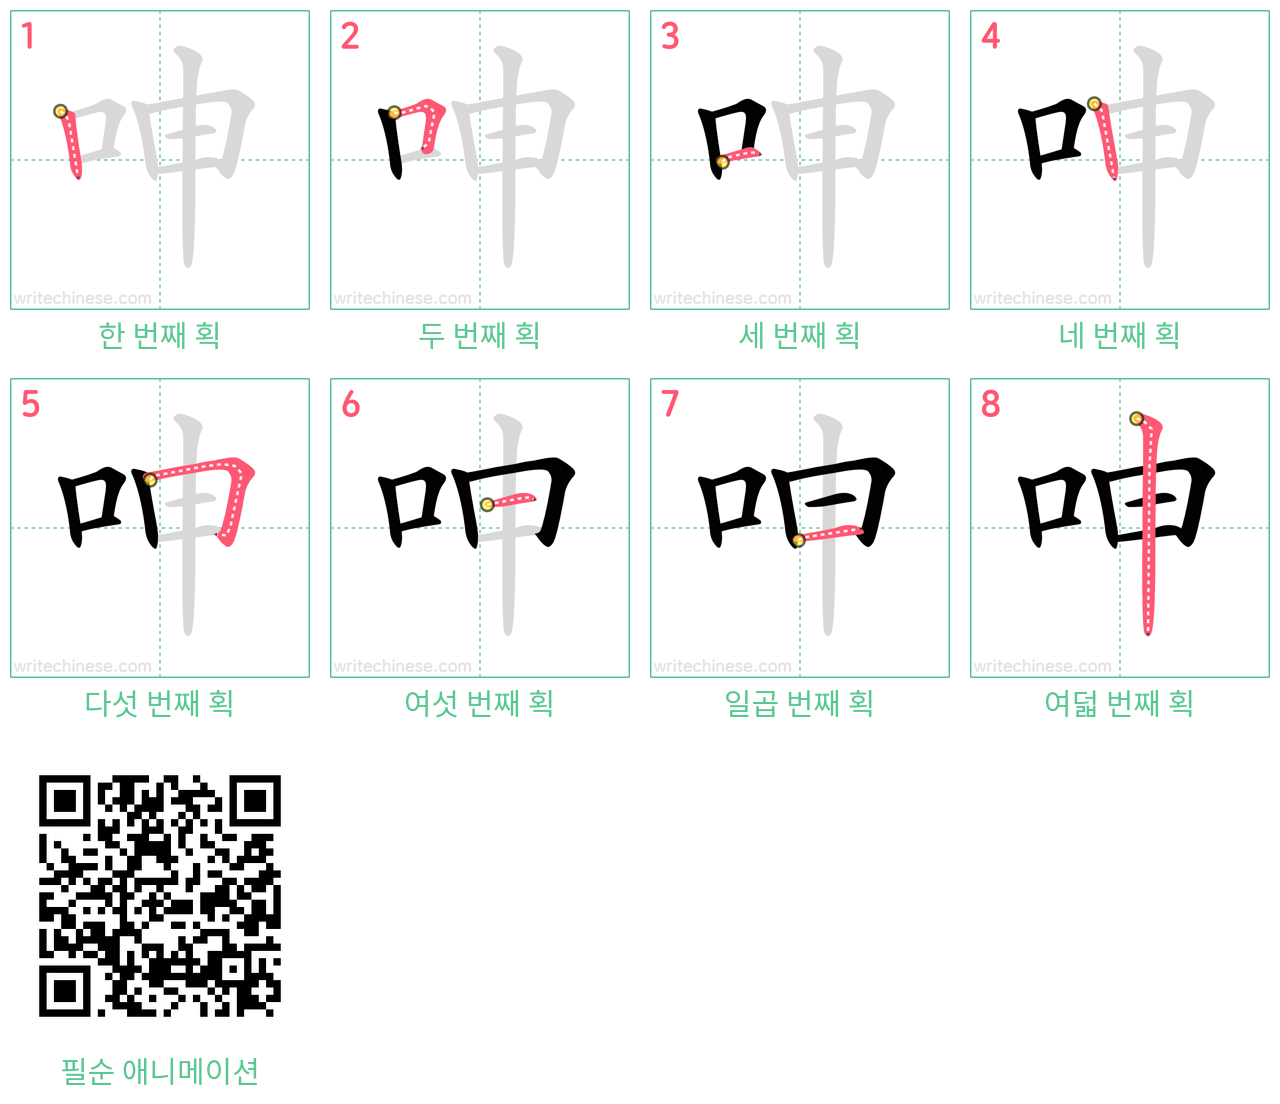 呻 step-by-step stroke order diagrams